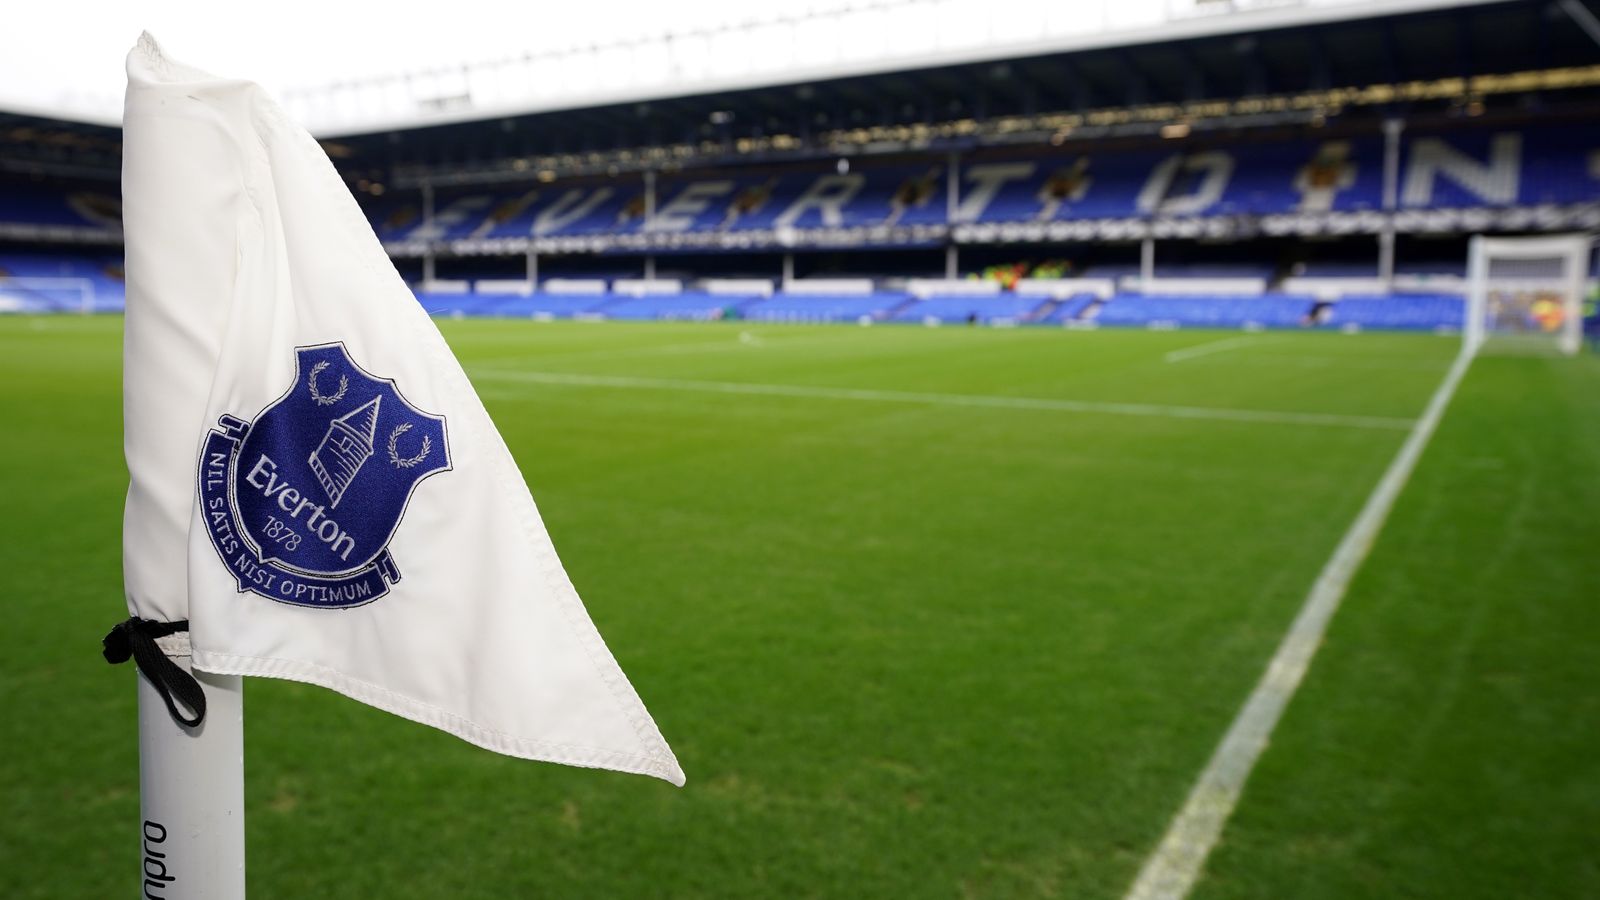 Everton exprime sa crainte que la relégation de la Premier League ne compromette sa capacité à continuer en tant qu ‘«entreprise en activité» |  Nouvelles du football